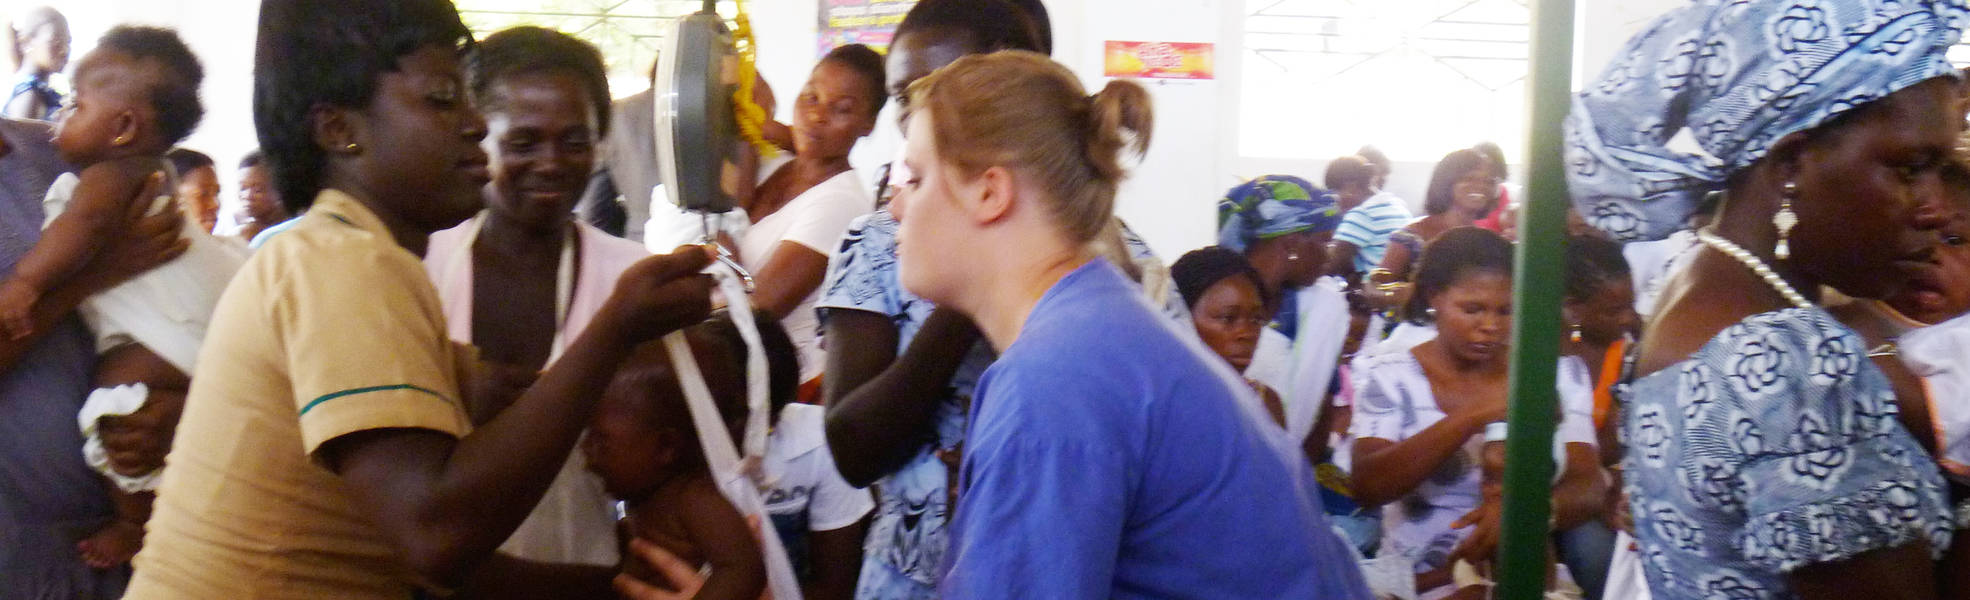 Freiwilligenarbeit in der Geburtshilfe in Tansania